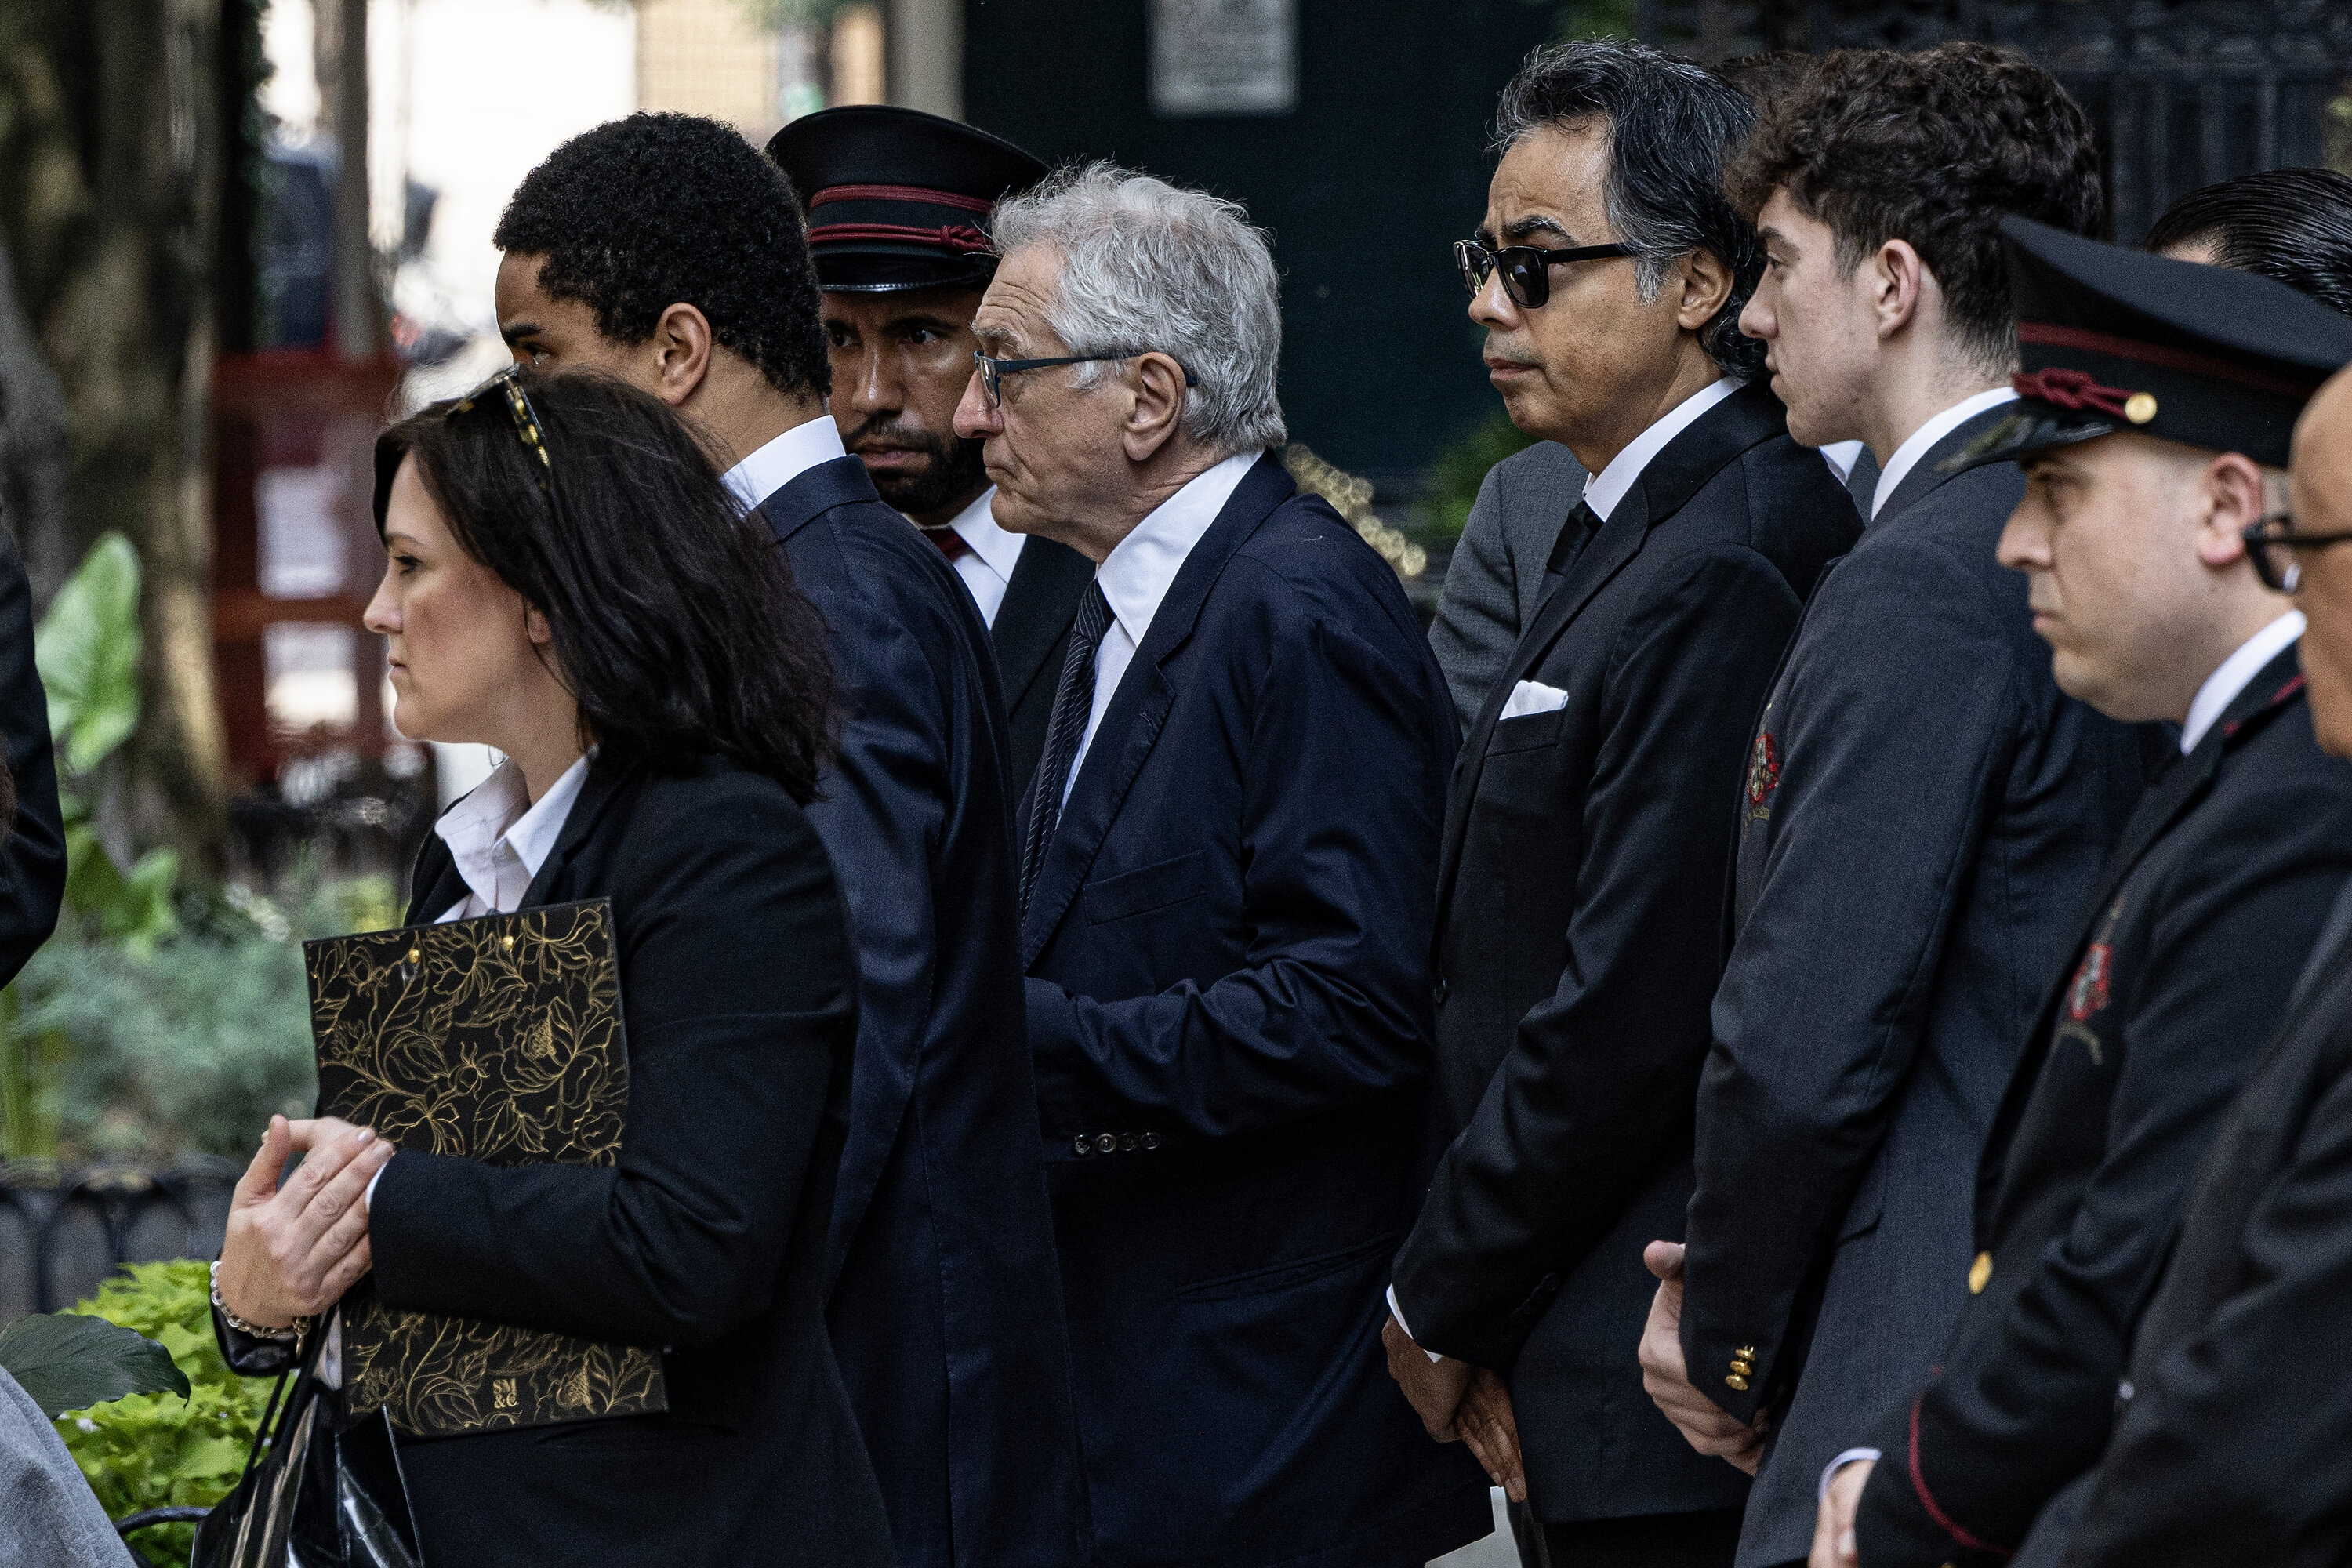 Мрачный Роберт де Ниро пришел на похороны внука, а его дочь озвучила абсурдную причину смерти 19-летнего юноши